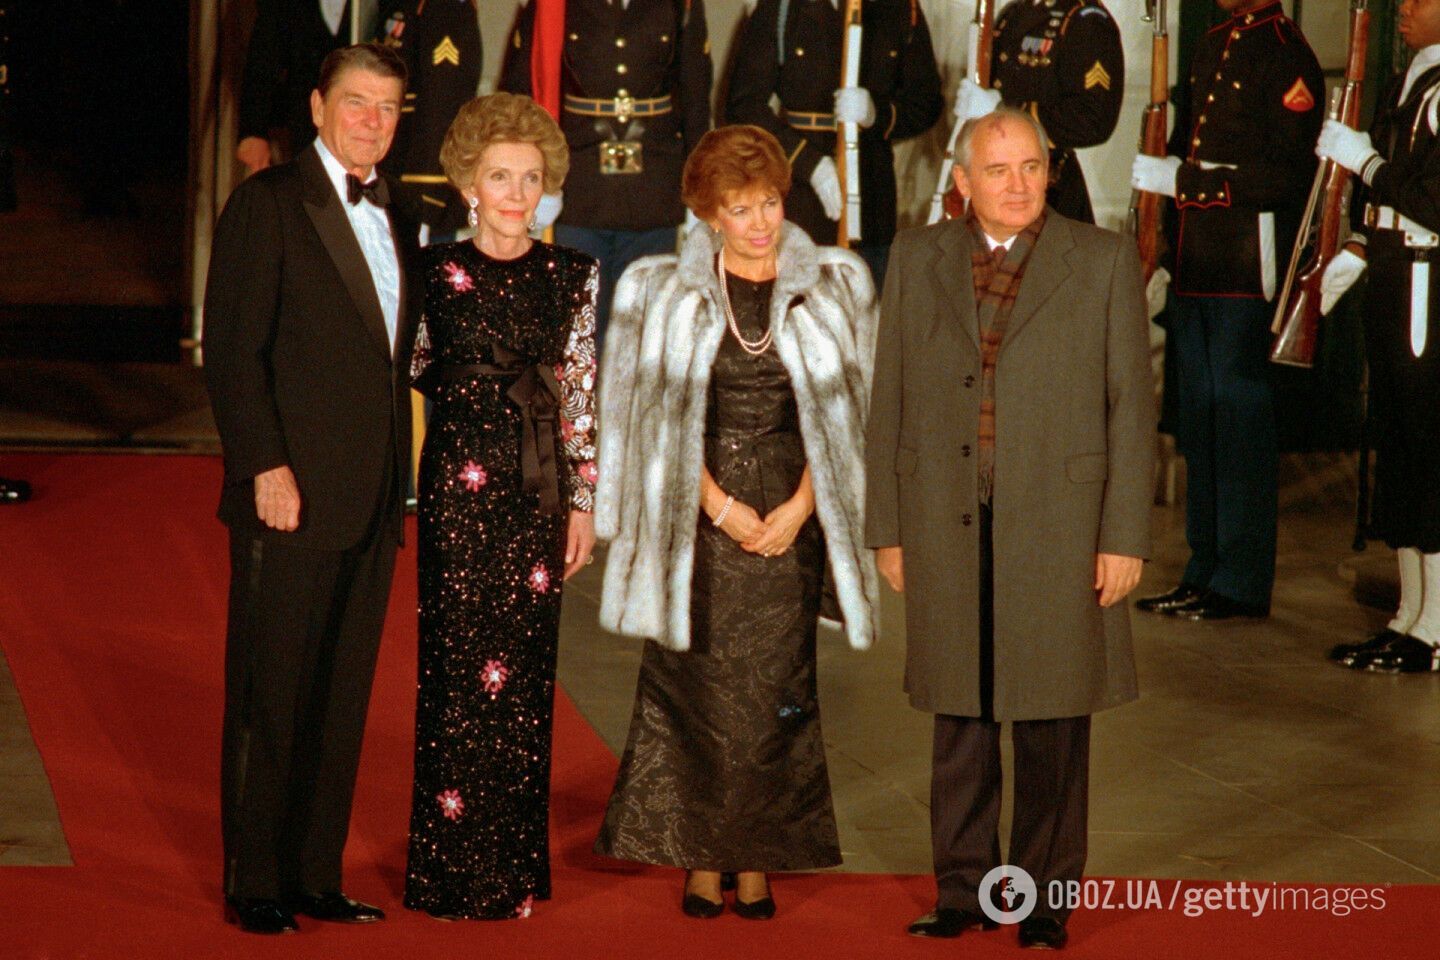 Як Михайло Горбачов копіював стиль західних політиків. 5 модних образів єдиного президента СРСР